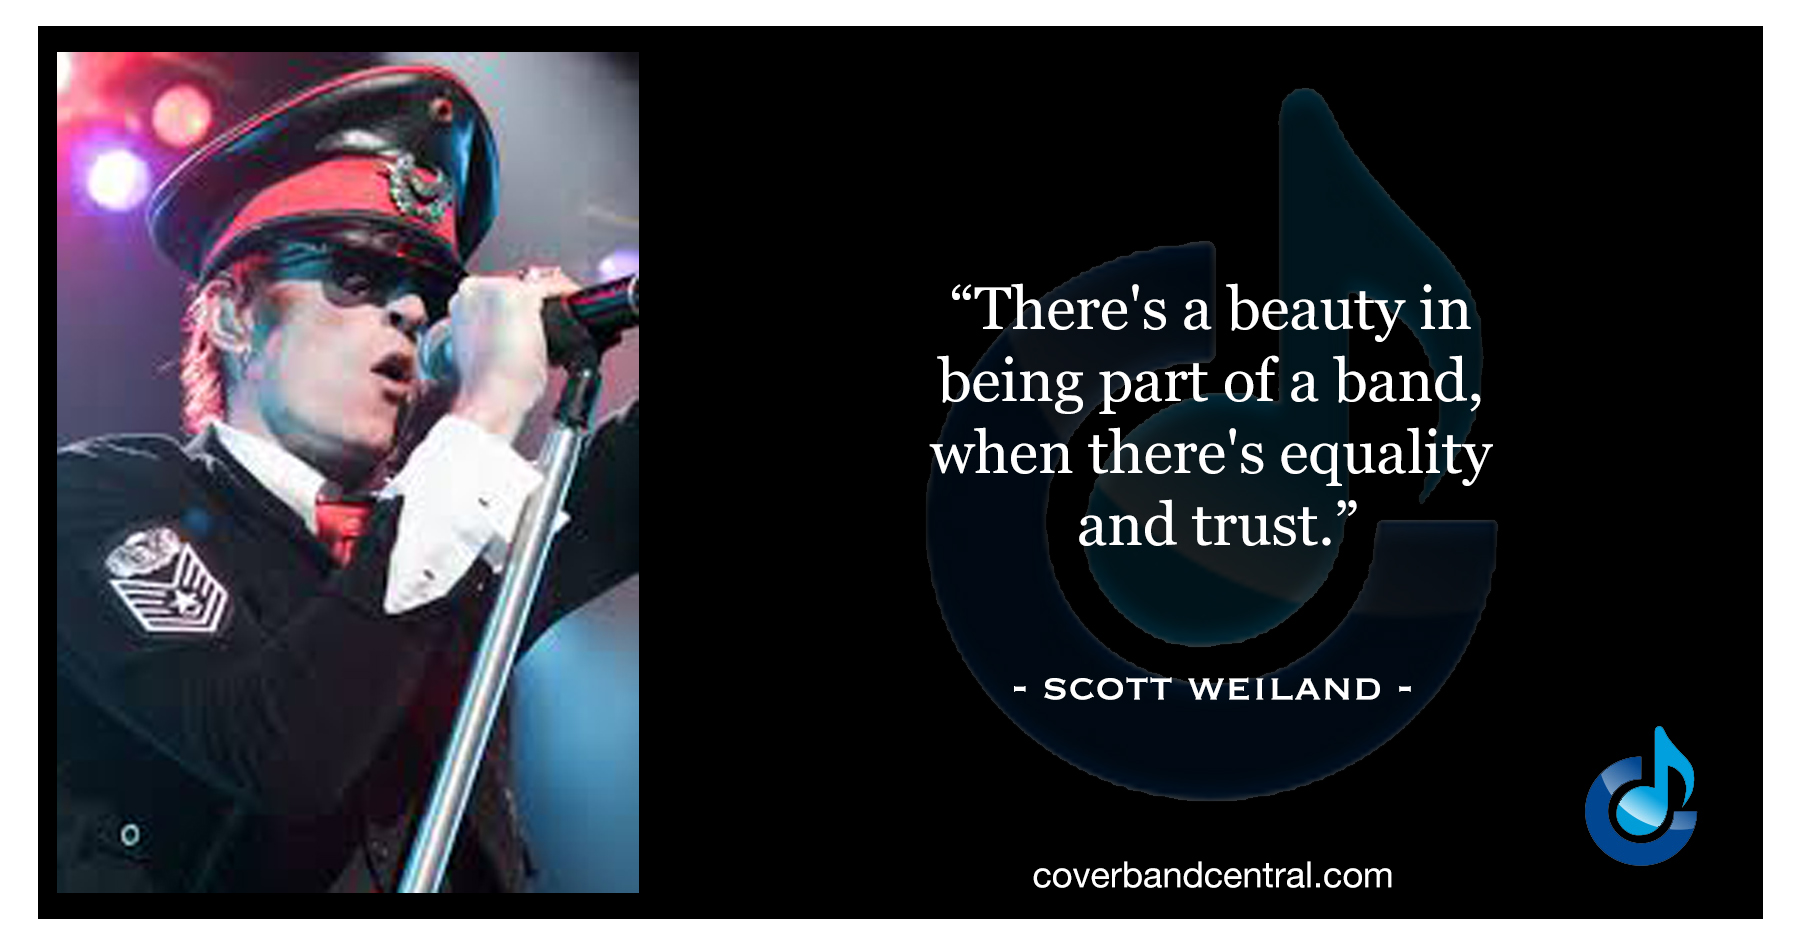 Scott Weiland quote